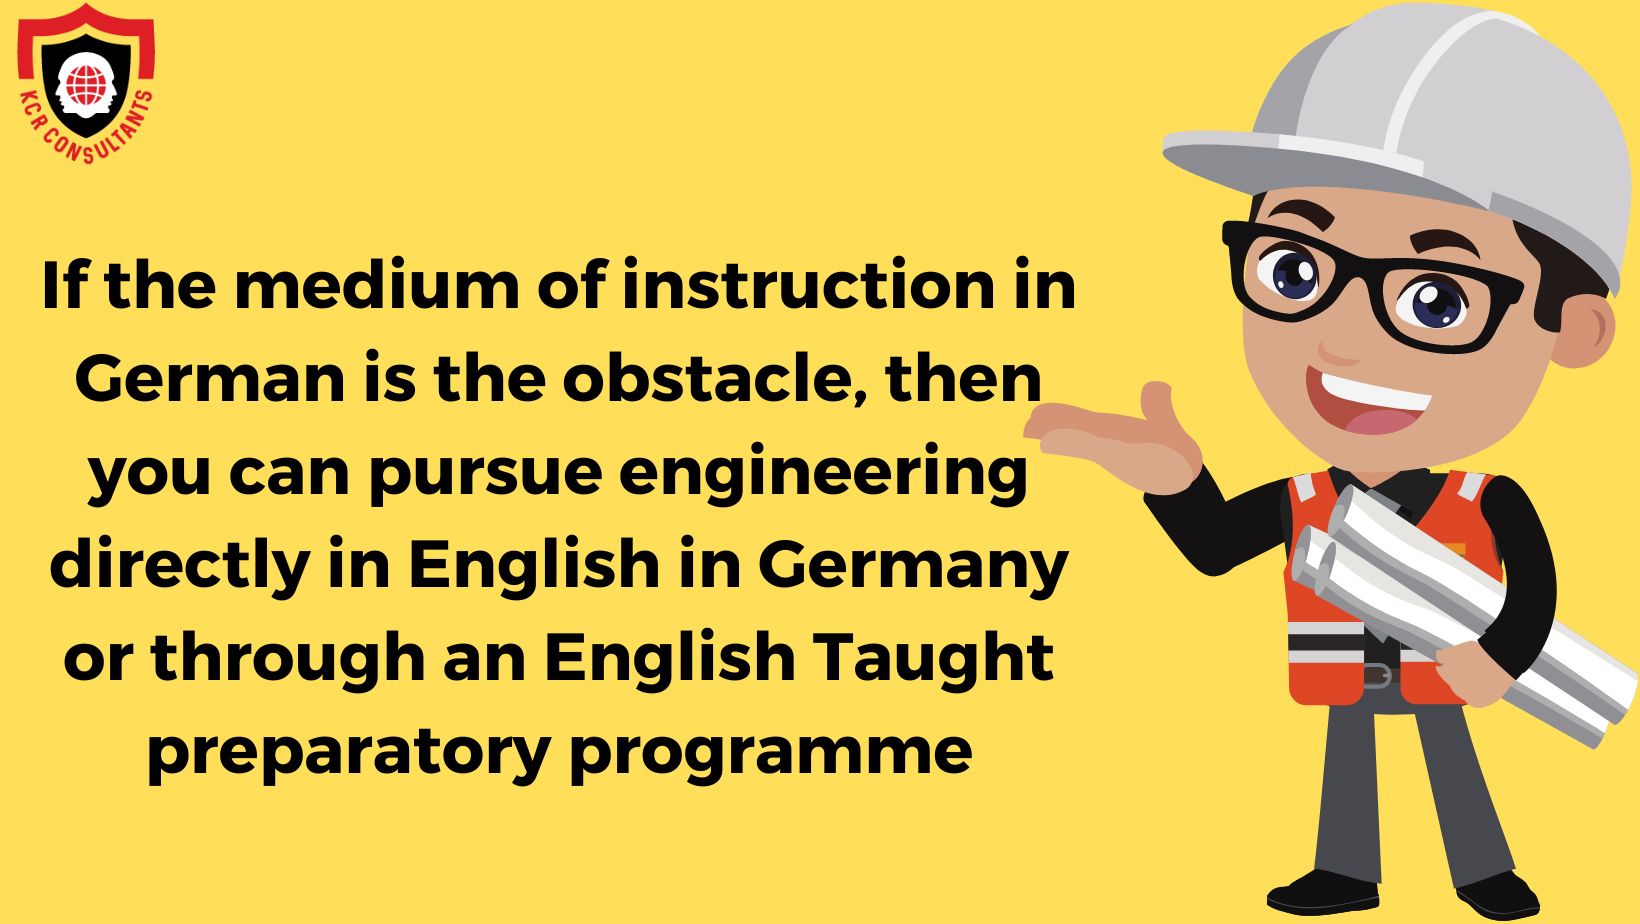 Engineering studies in Germany